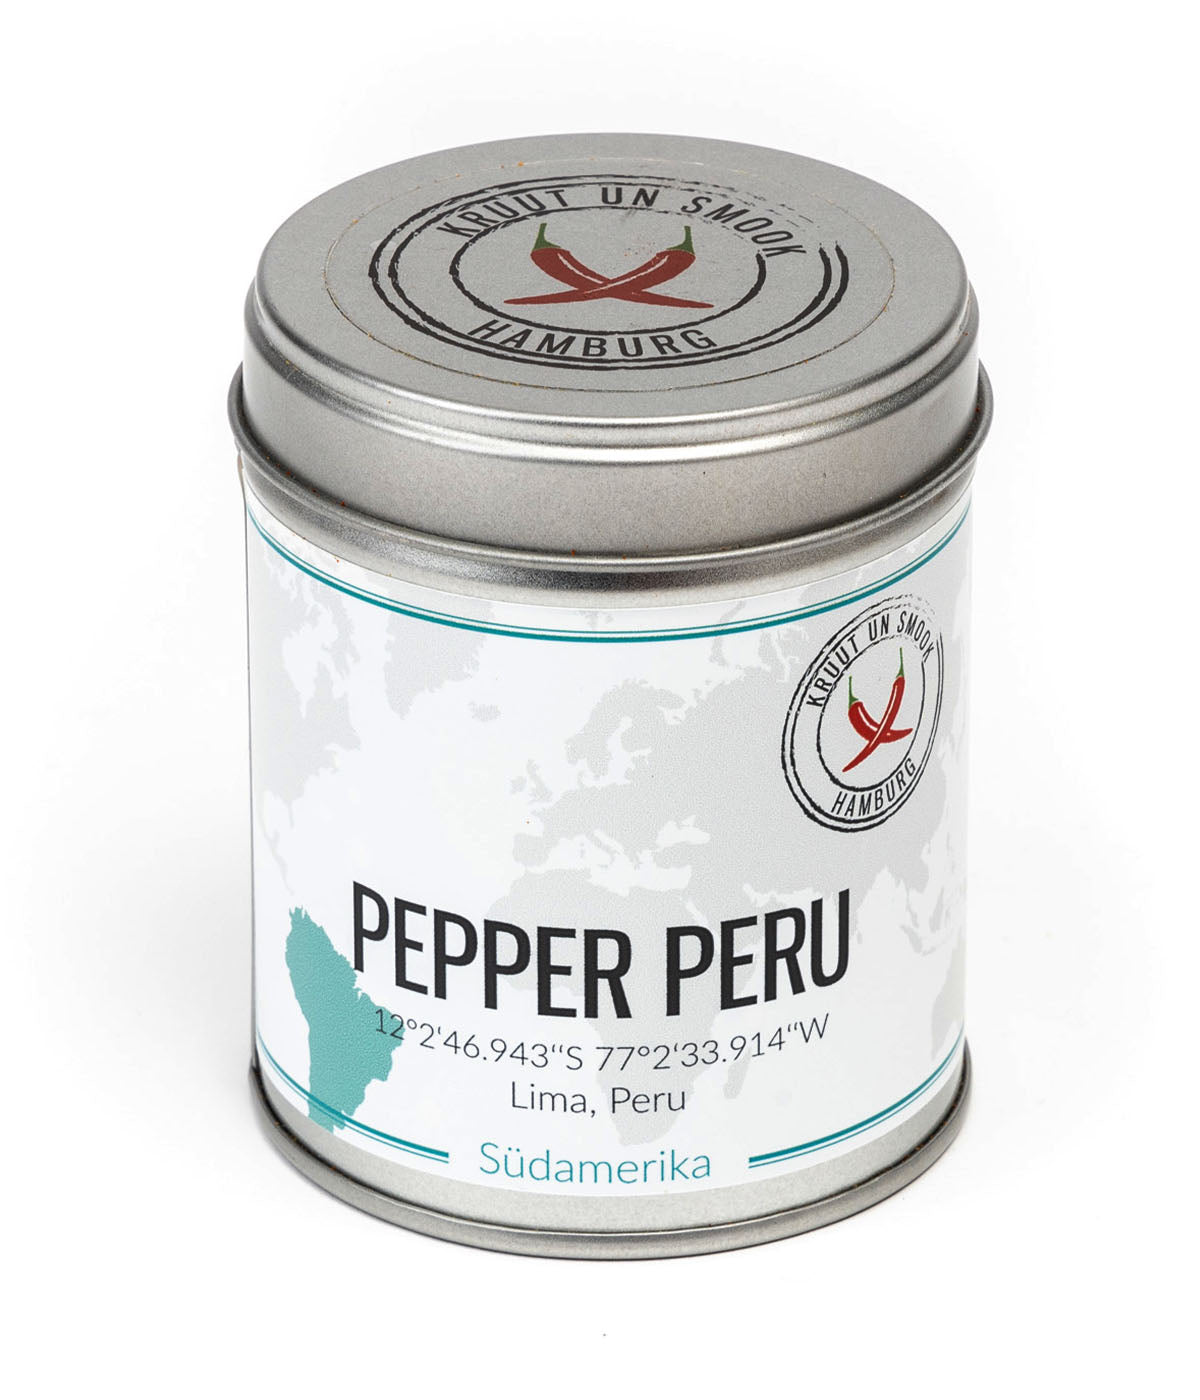 PepperPeru